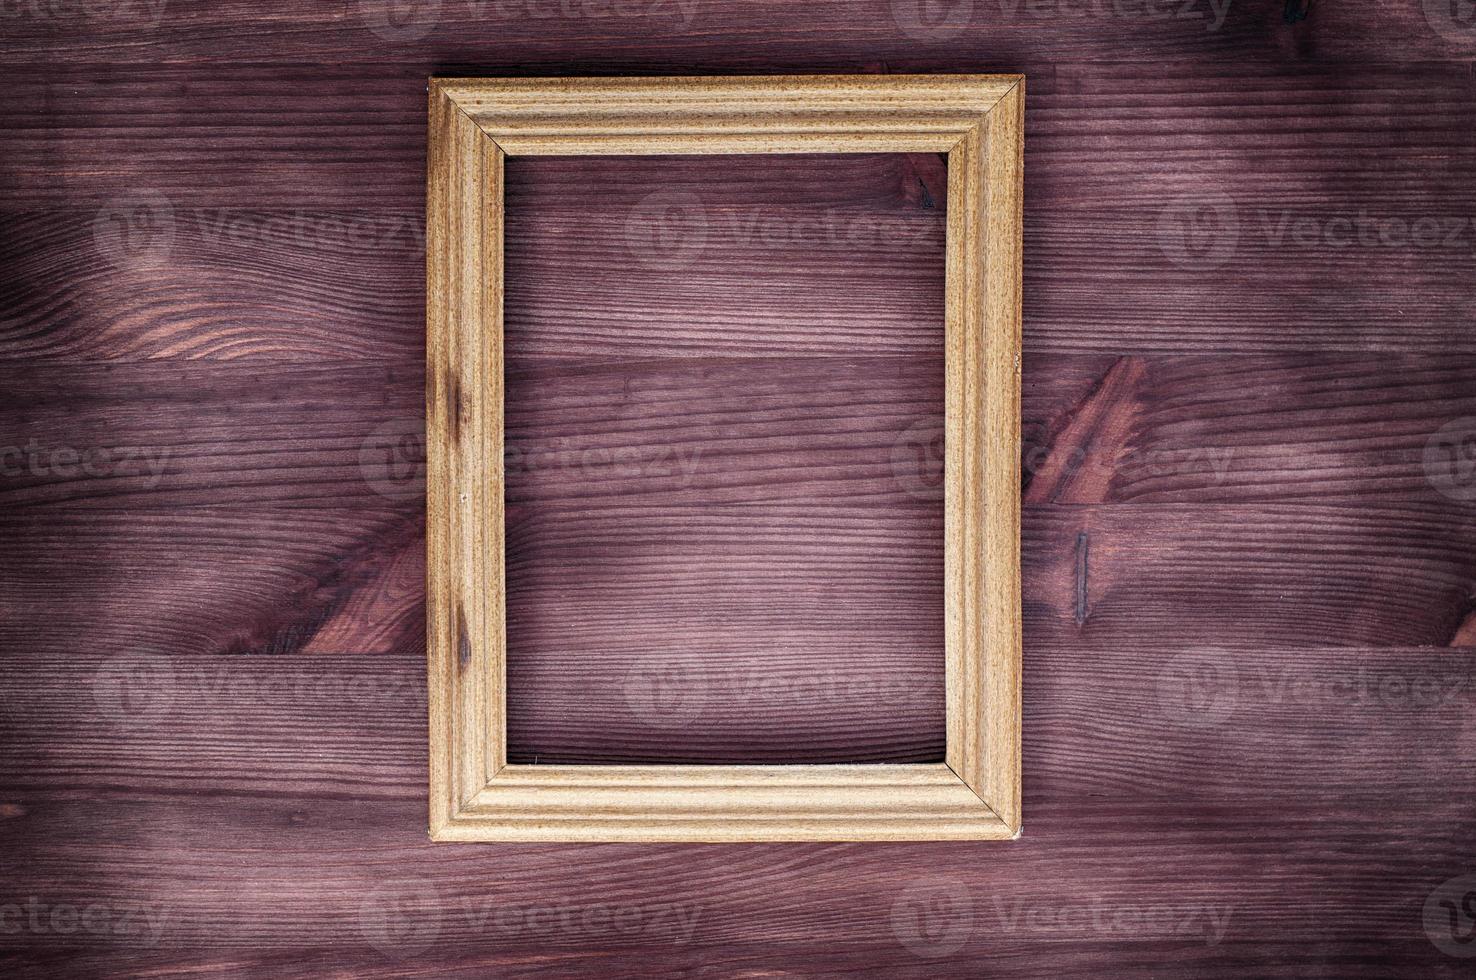 moldura de madeira vazia em uma superfície texturizada de madeira foto